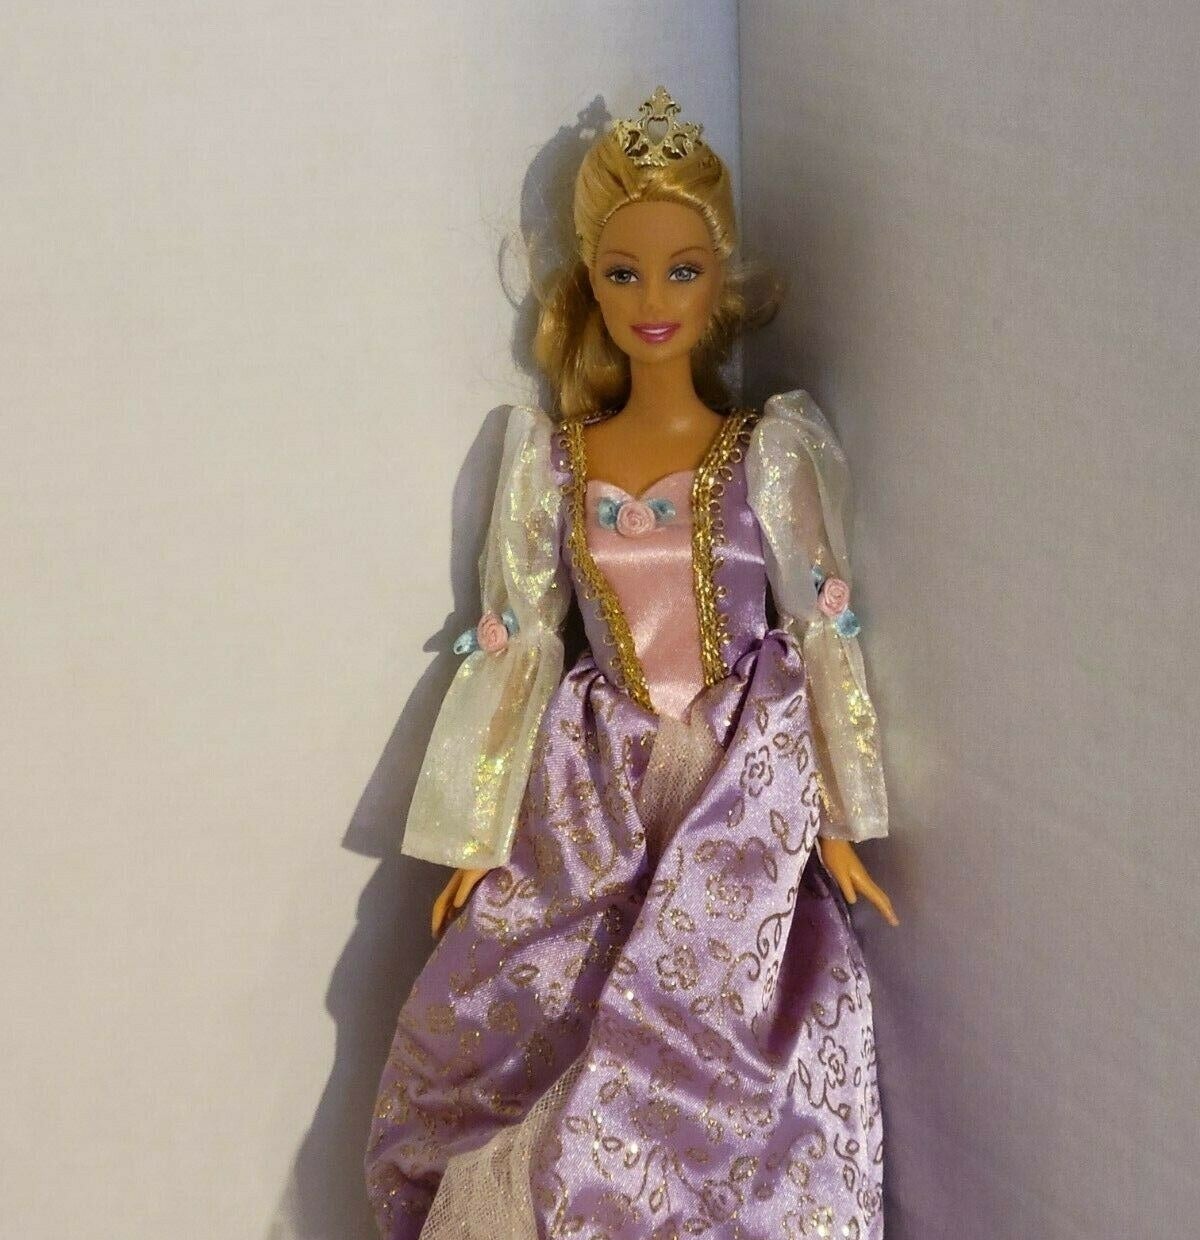 Rapunzel Barbie in a purple gown